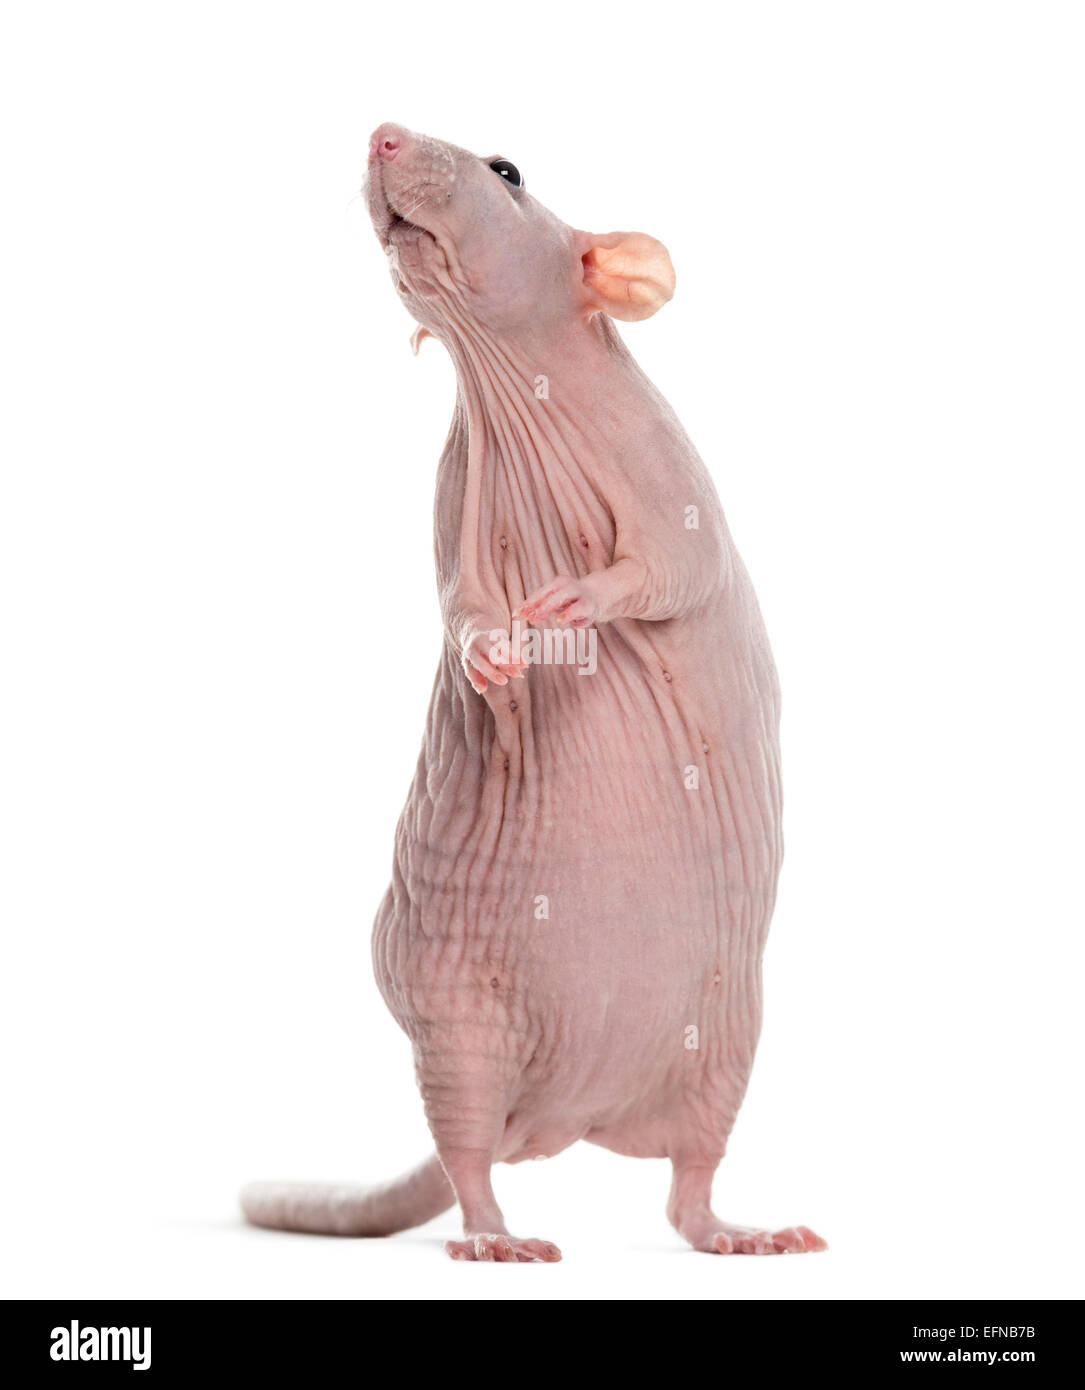 Unbehaart Ratte, Rattus Norvegicus, vor weißem Hintergrund Stockfoto